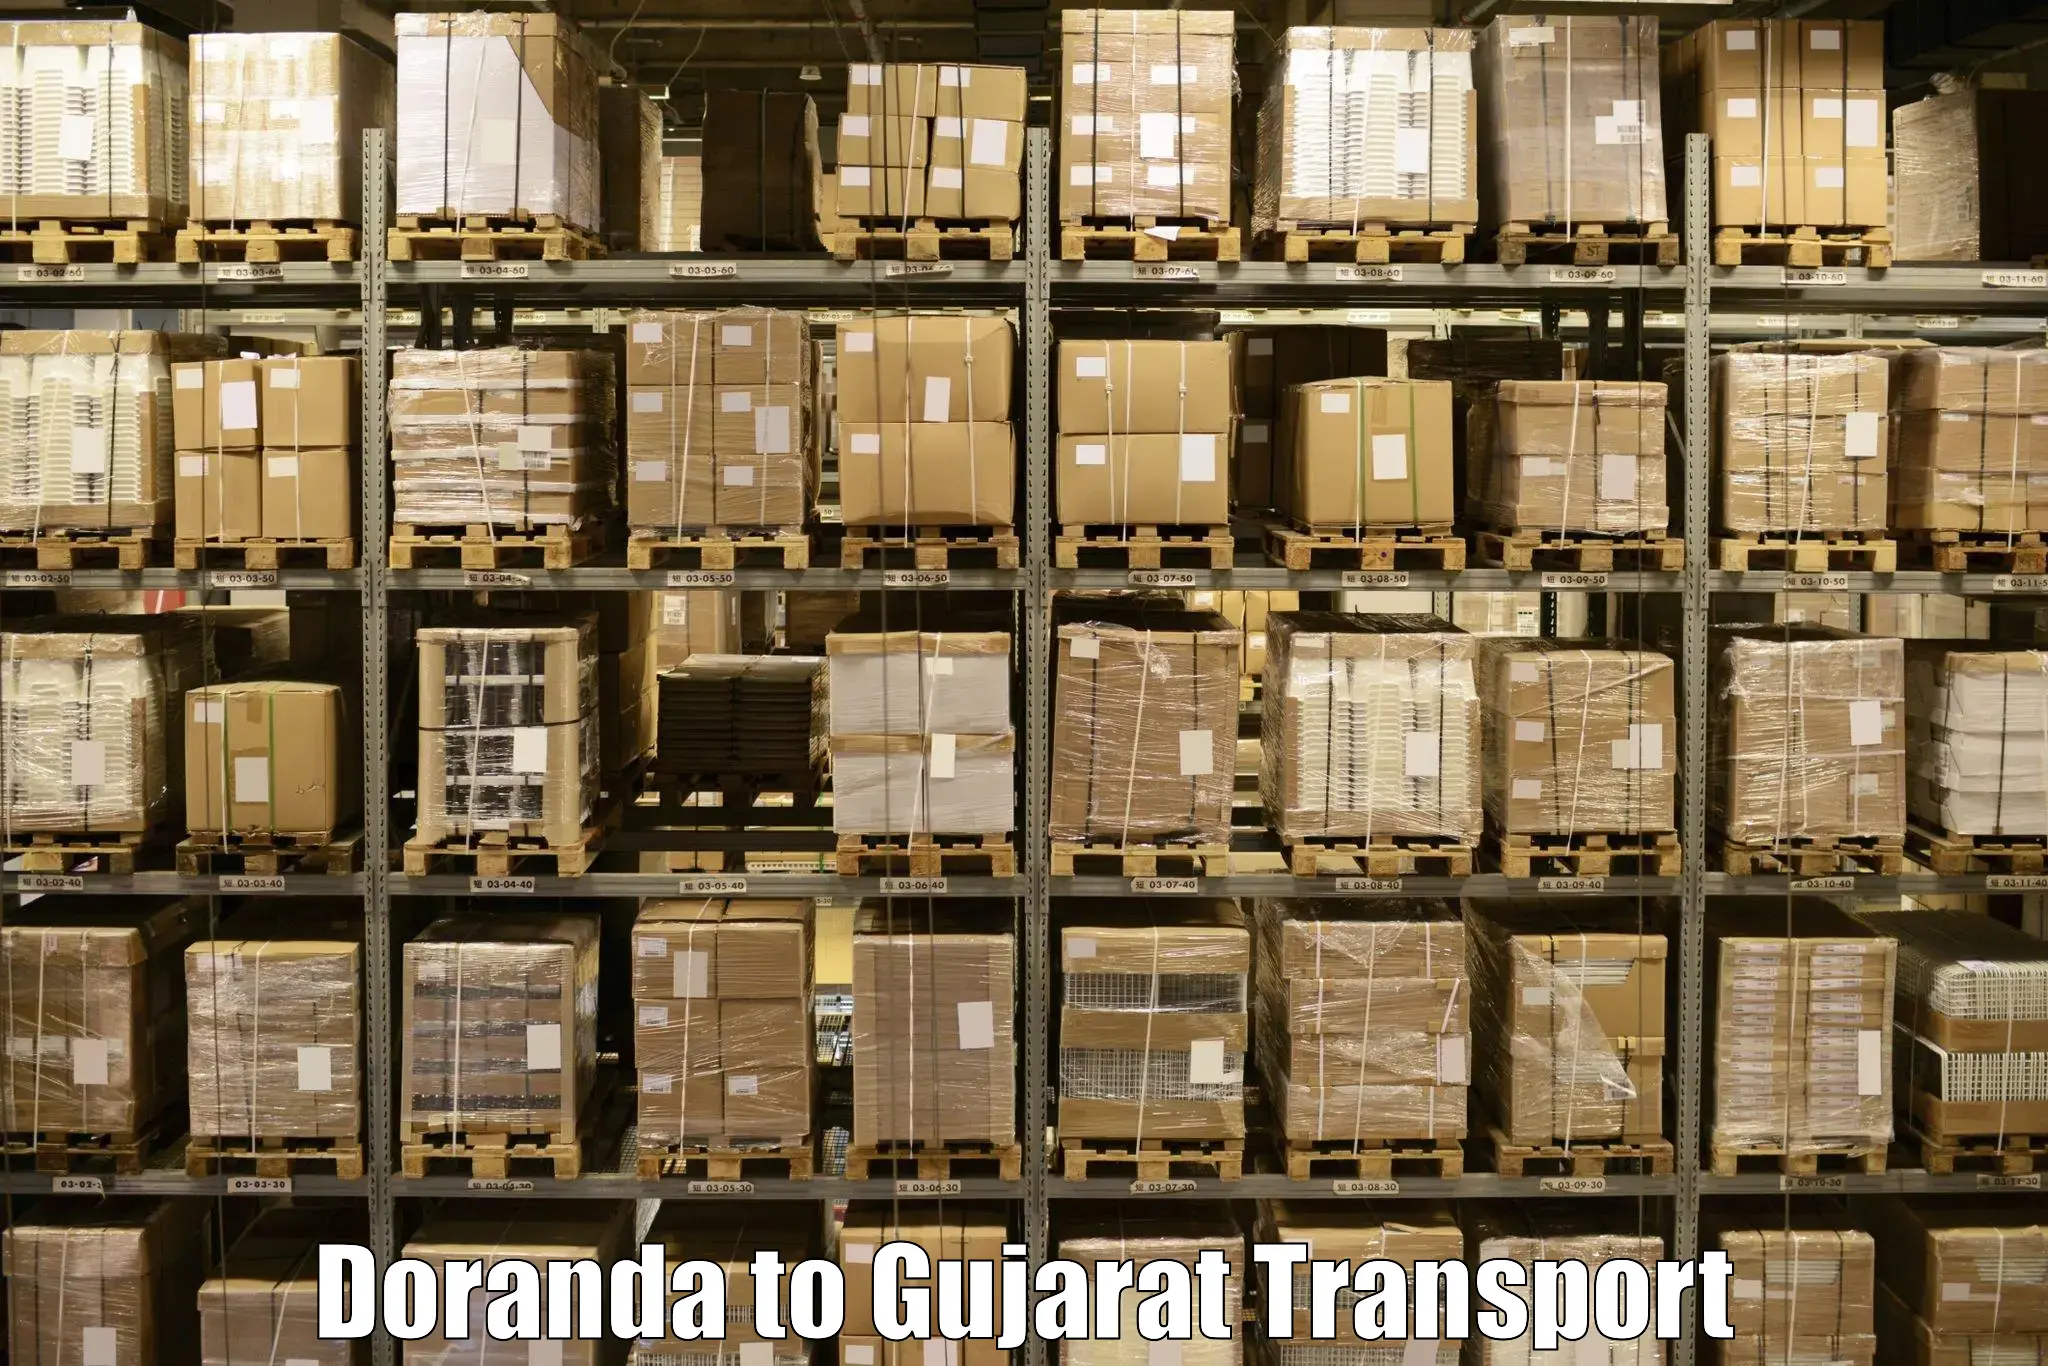 Cargo transportation services Doranda to Deesa